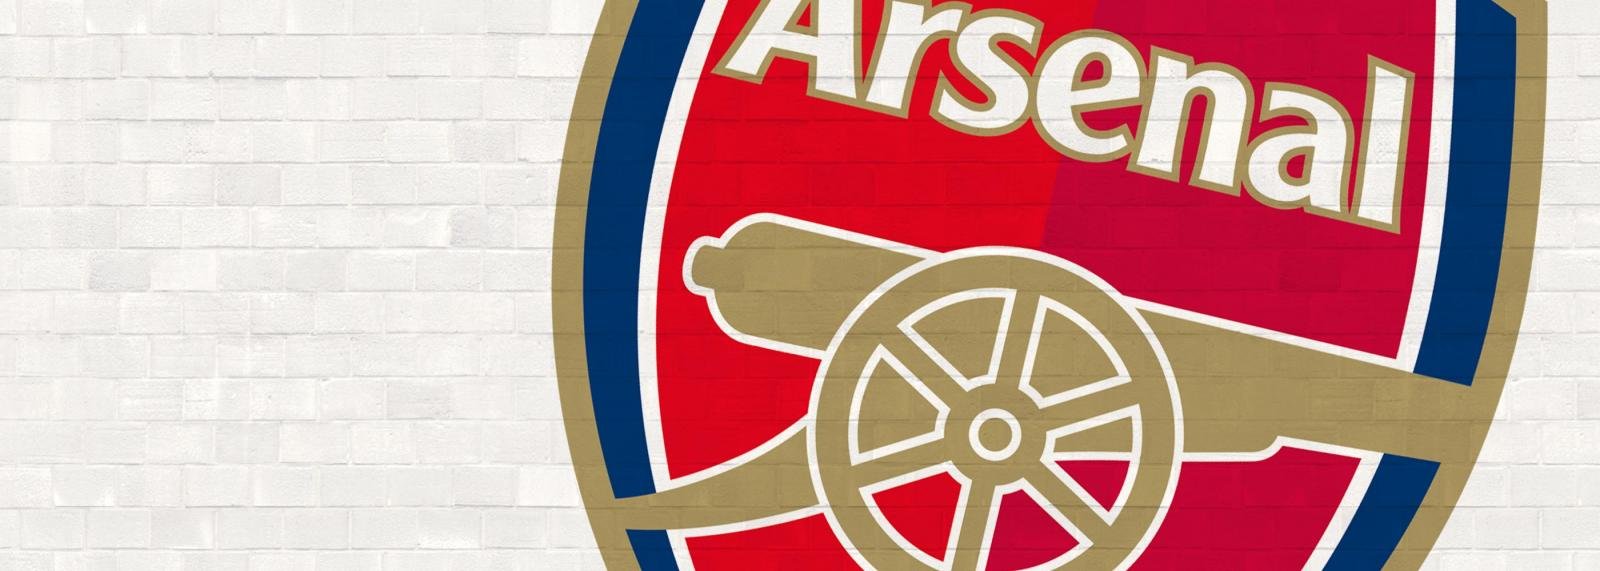 Arsenal join the hunt for 42-goal striker sensation